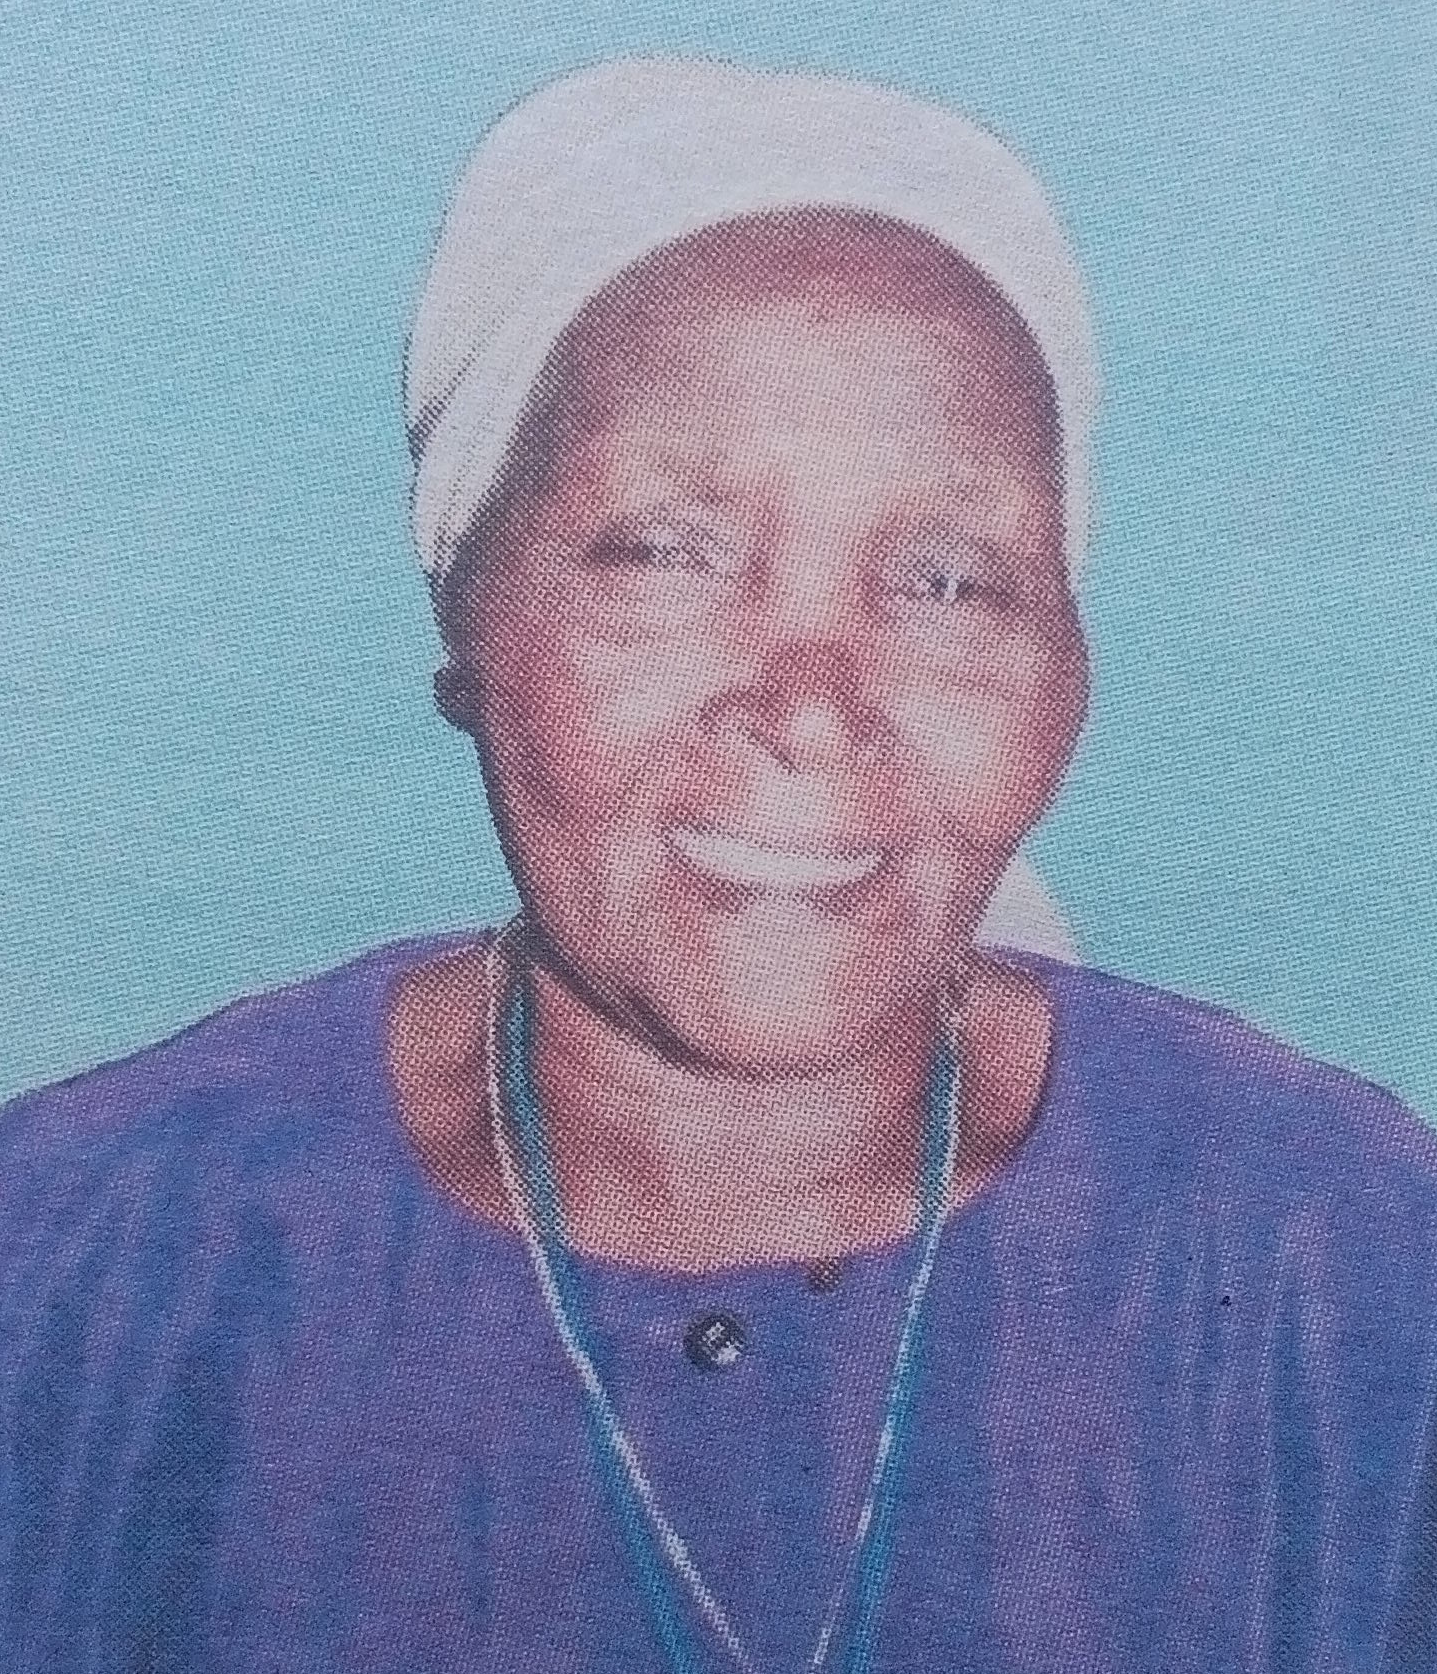 Obituary Image of Elizabeth Njeri Ndua